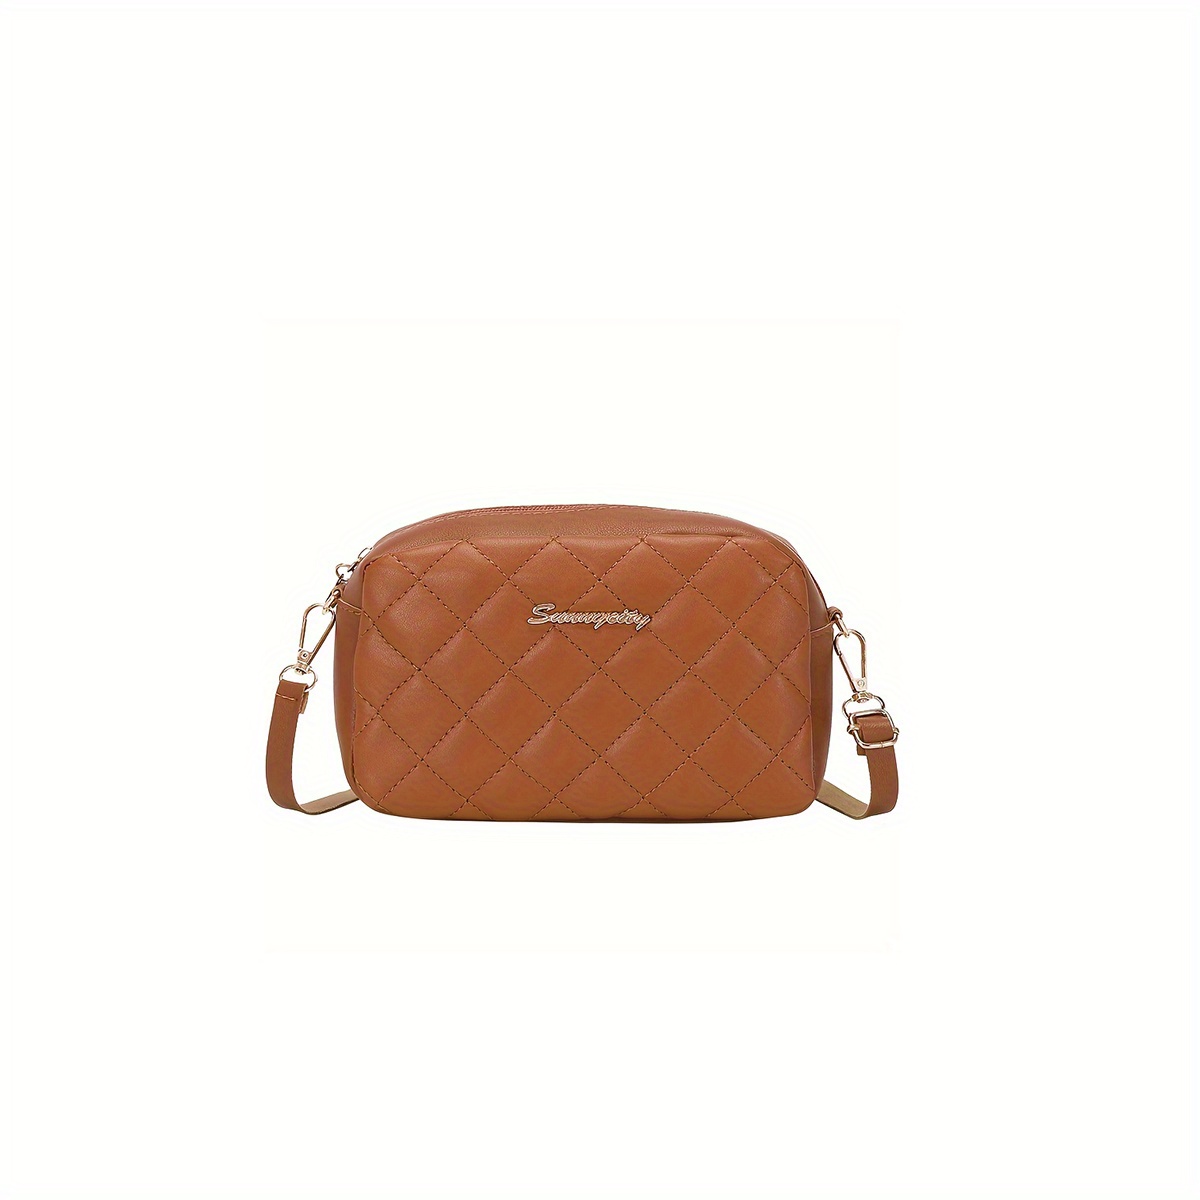 Vintage Fashionable Shoulder Bag and Handbag,one-size